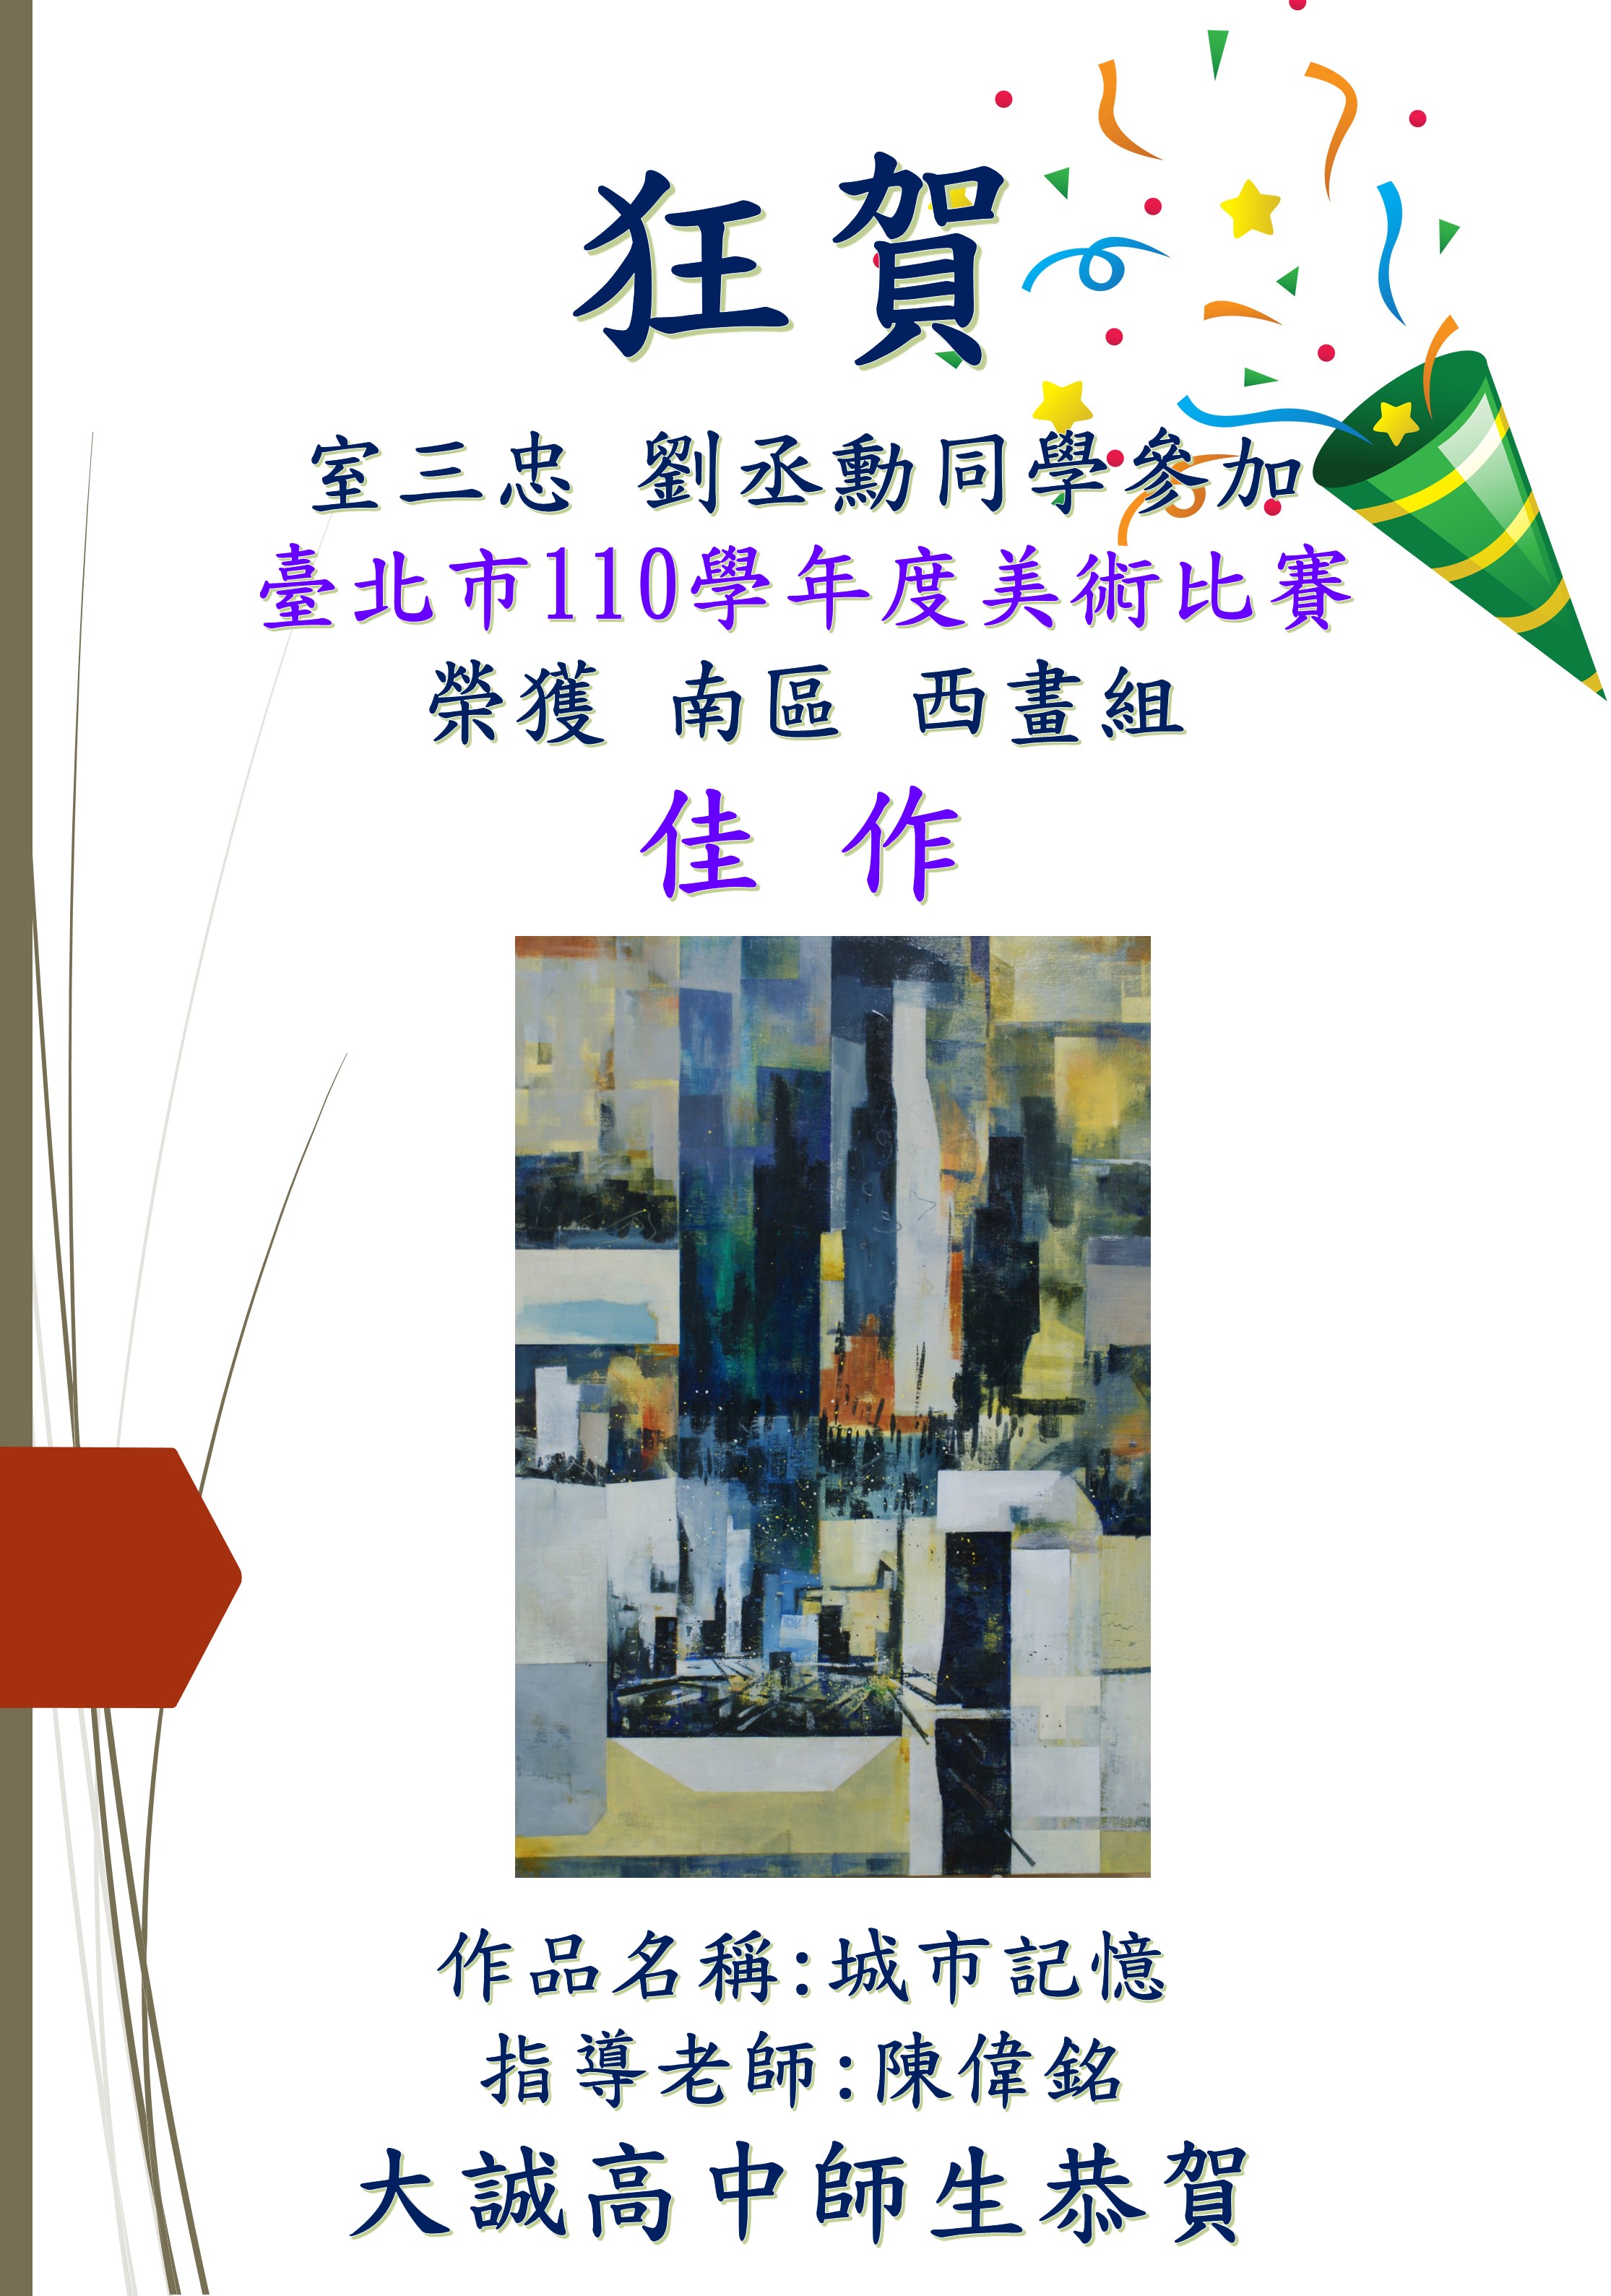 臺北市110學年度美術比賽榮獲南區西畫組佳作